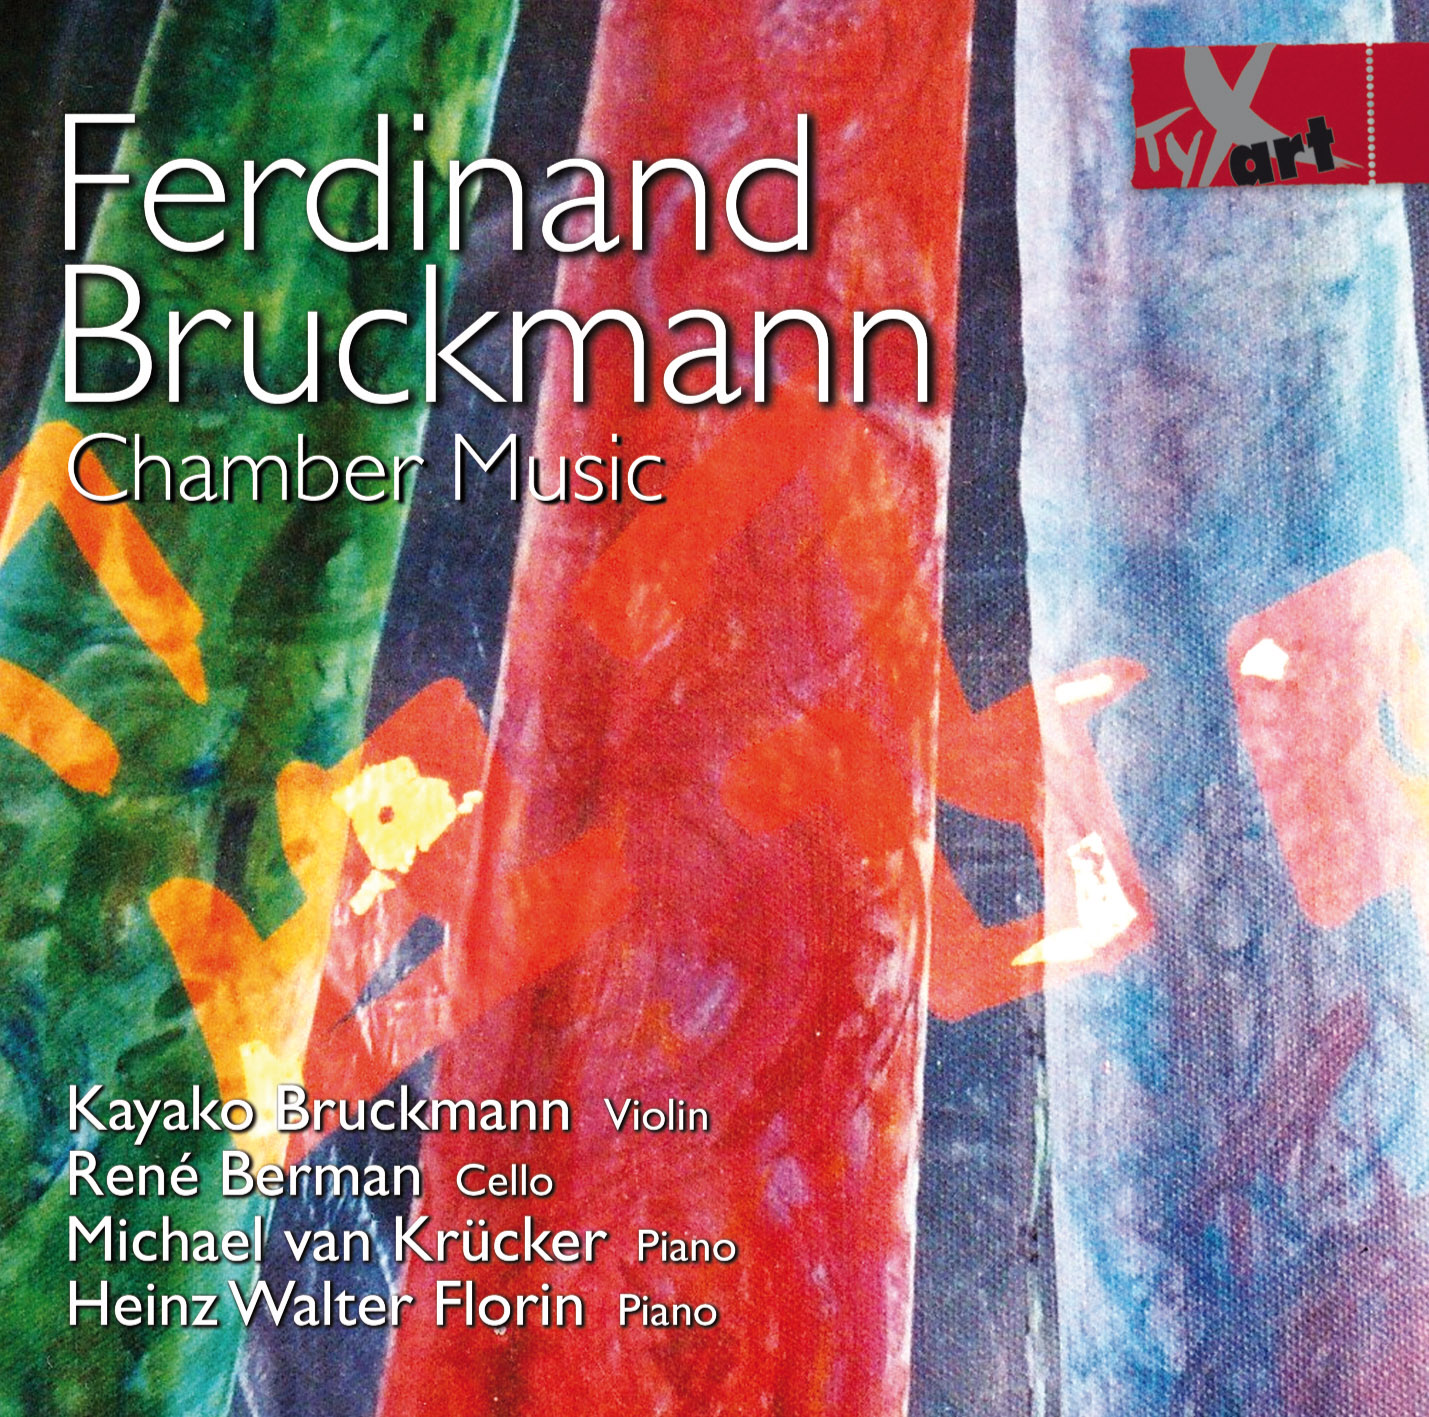 Ferdinand Bruckmann: Chamber Music